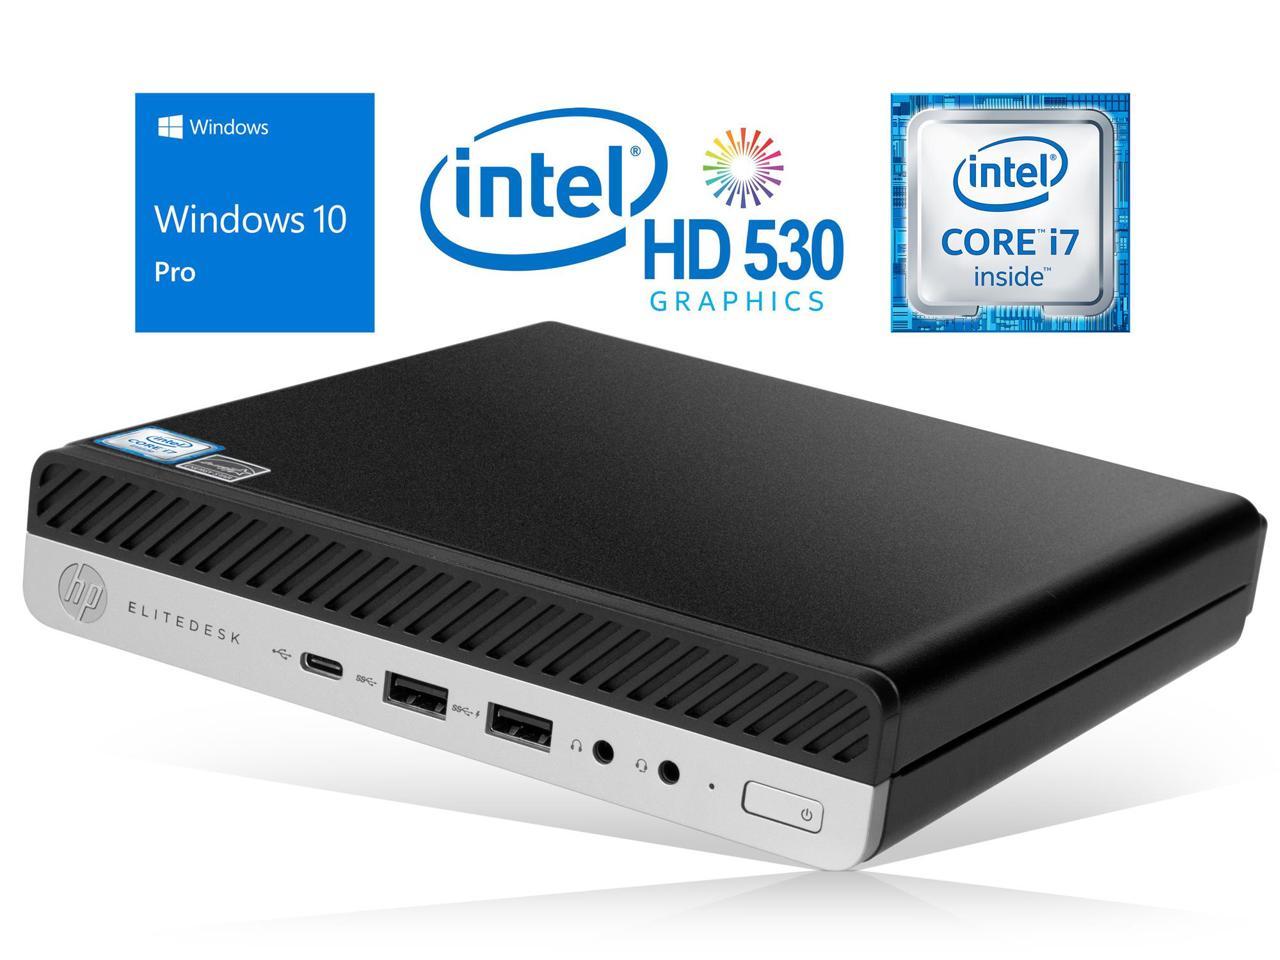 HP EliteDesk 800 G3 Mini PC, Intel Core i7-6700 Upto 4.0GHz, 8GB RAM, 512GB NVMe SSD + 1TB HDD, DisplayPort, Wi-Fi, Bluetooth, Windows 10 Pro